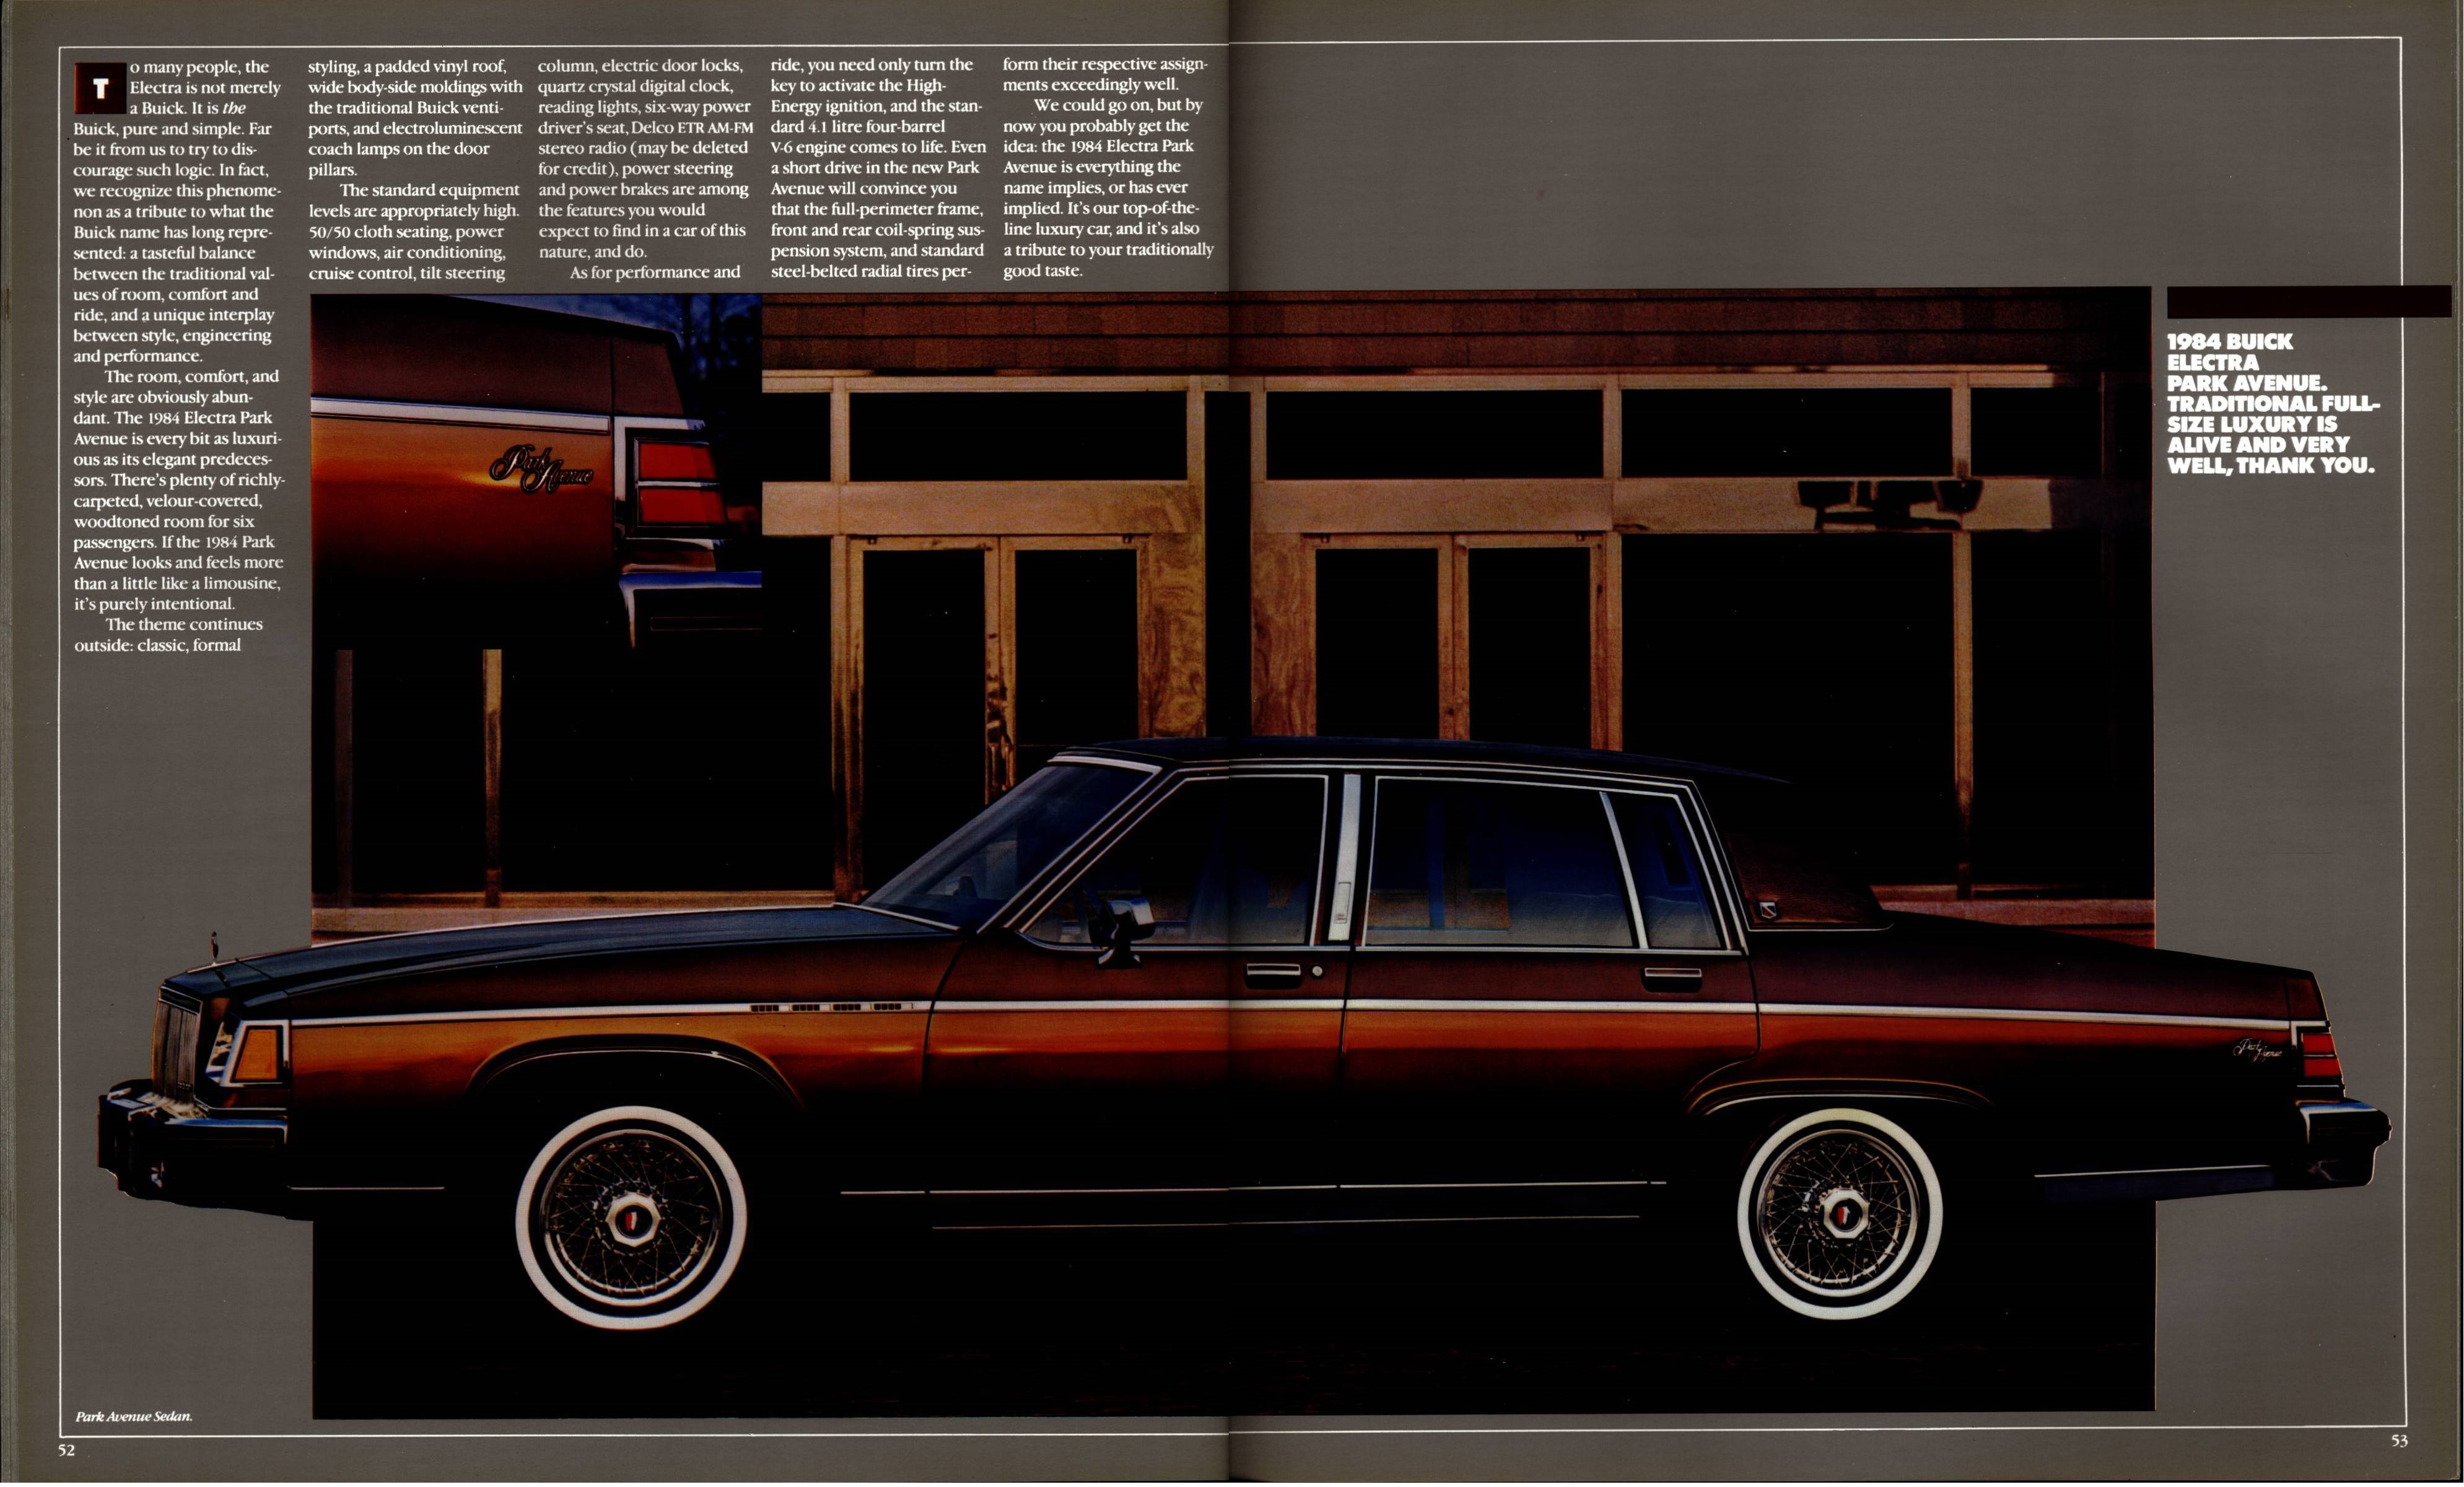 1984 Buick Full Line Prestige 52-53